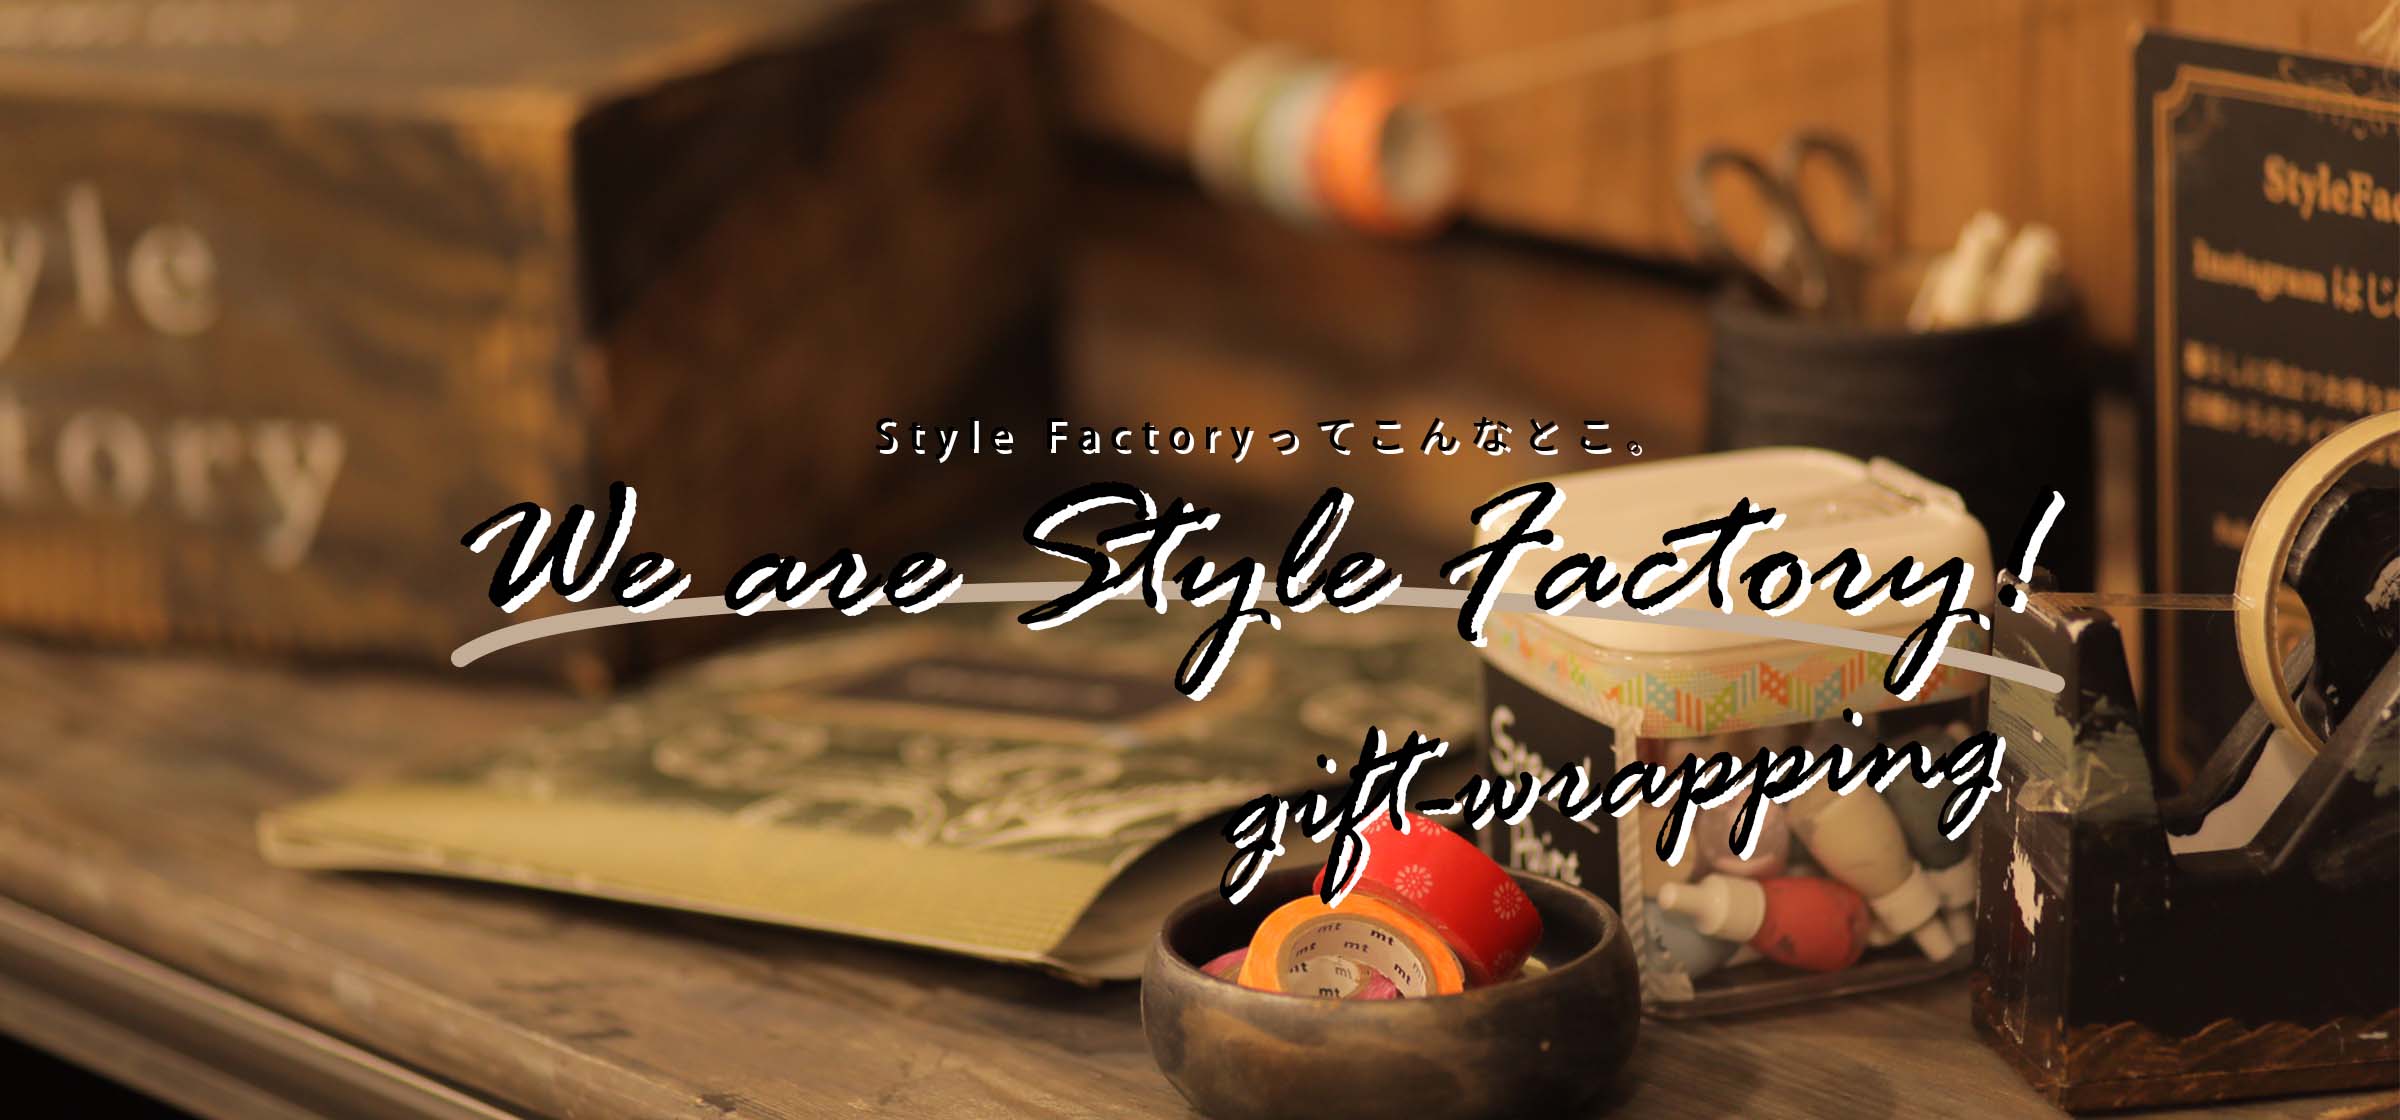 We are Style Factory！ Vol.9　お届けするのはモノだけじゃなく私たちの想いです店舗内風景